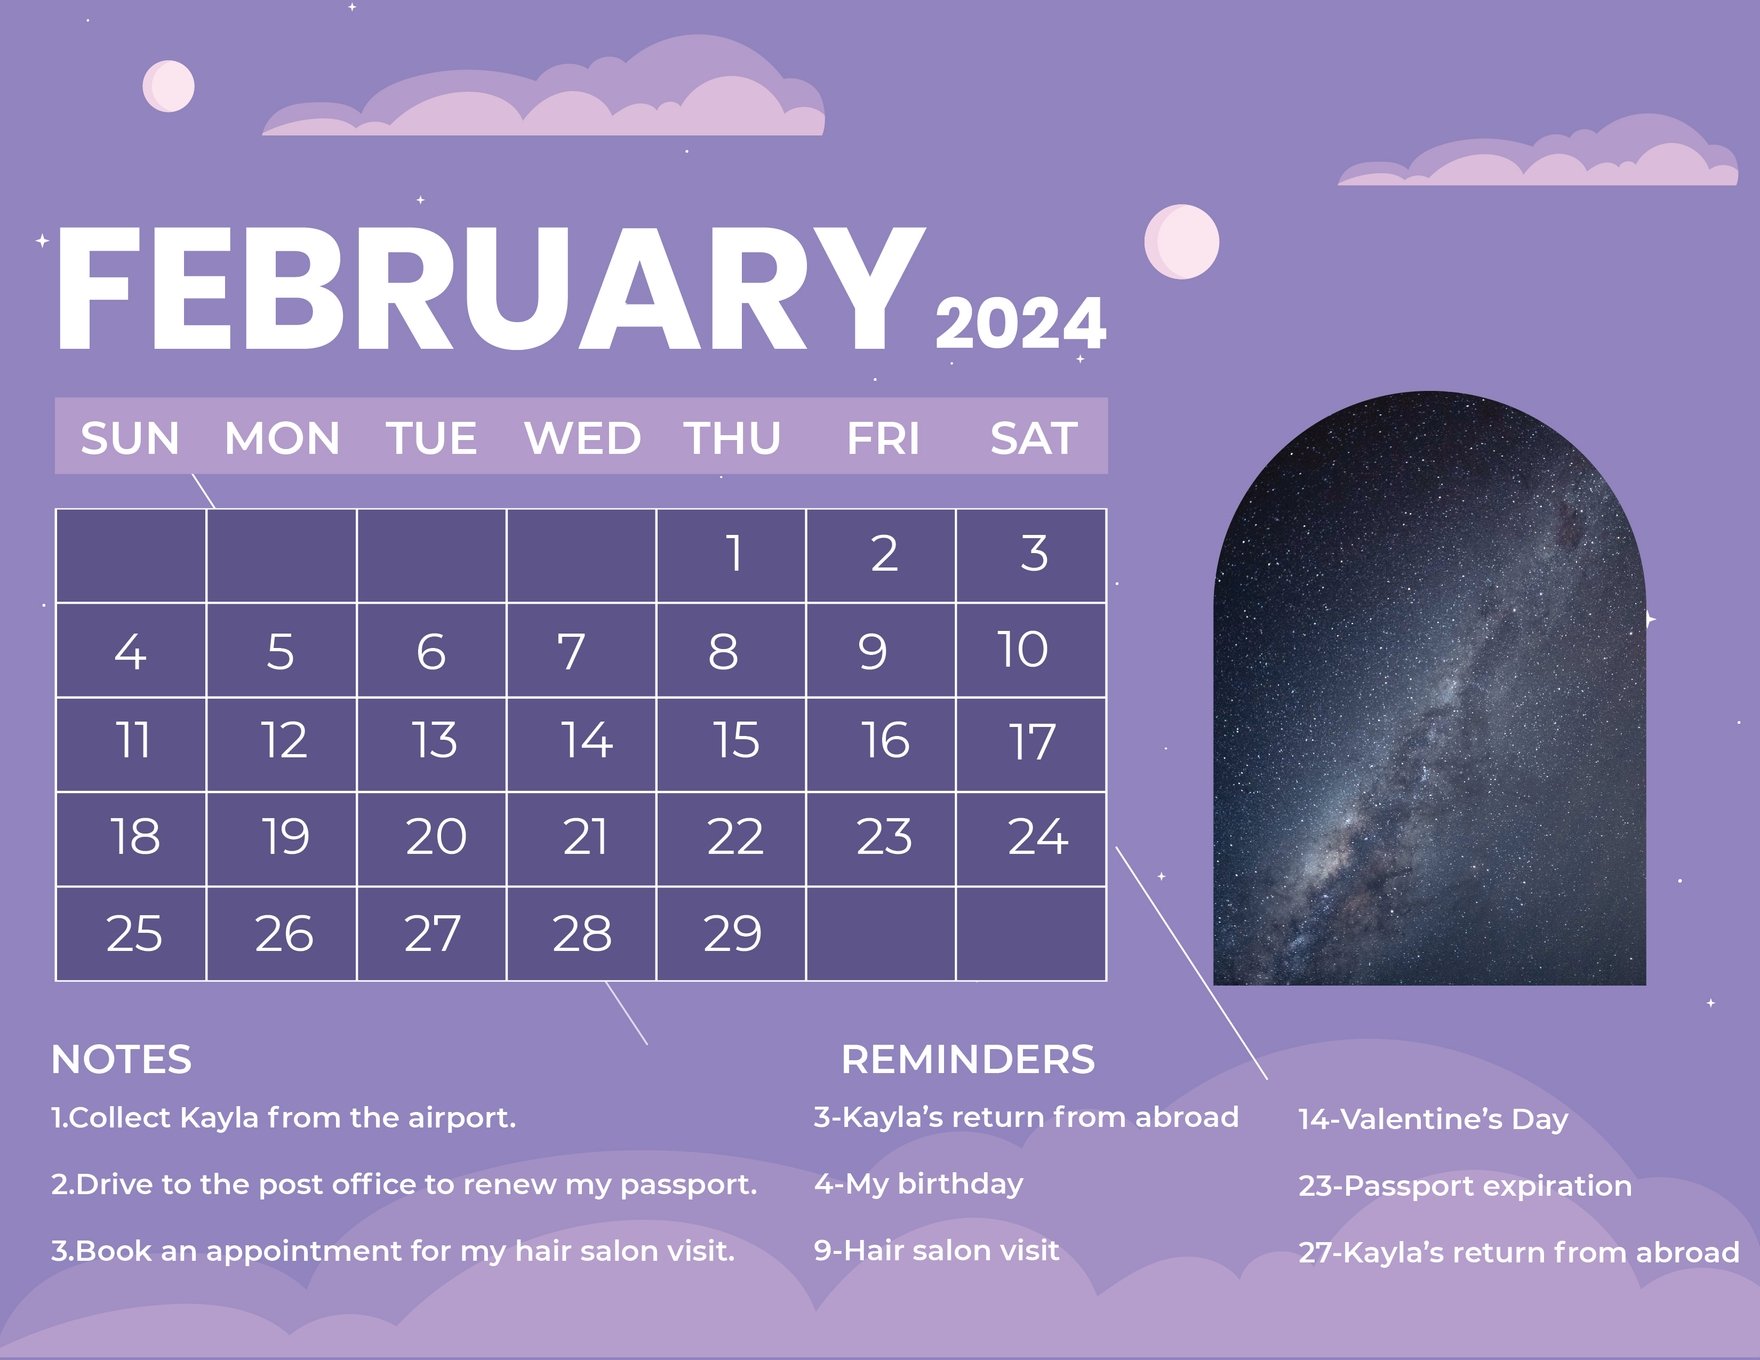 February 2024 Photo Calendar in Word, Illustrator, EPS, SVG, JPG